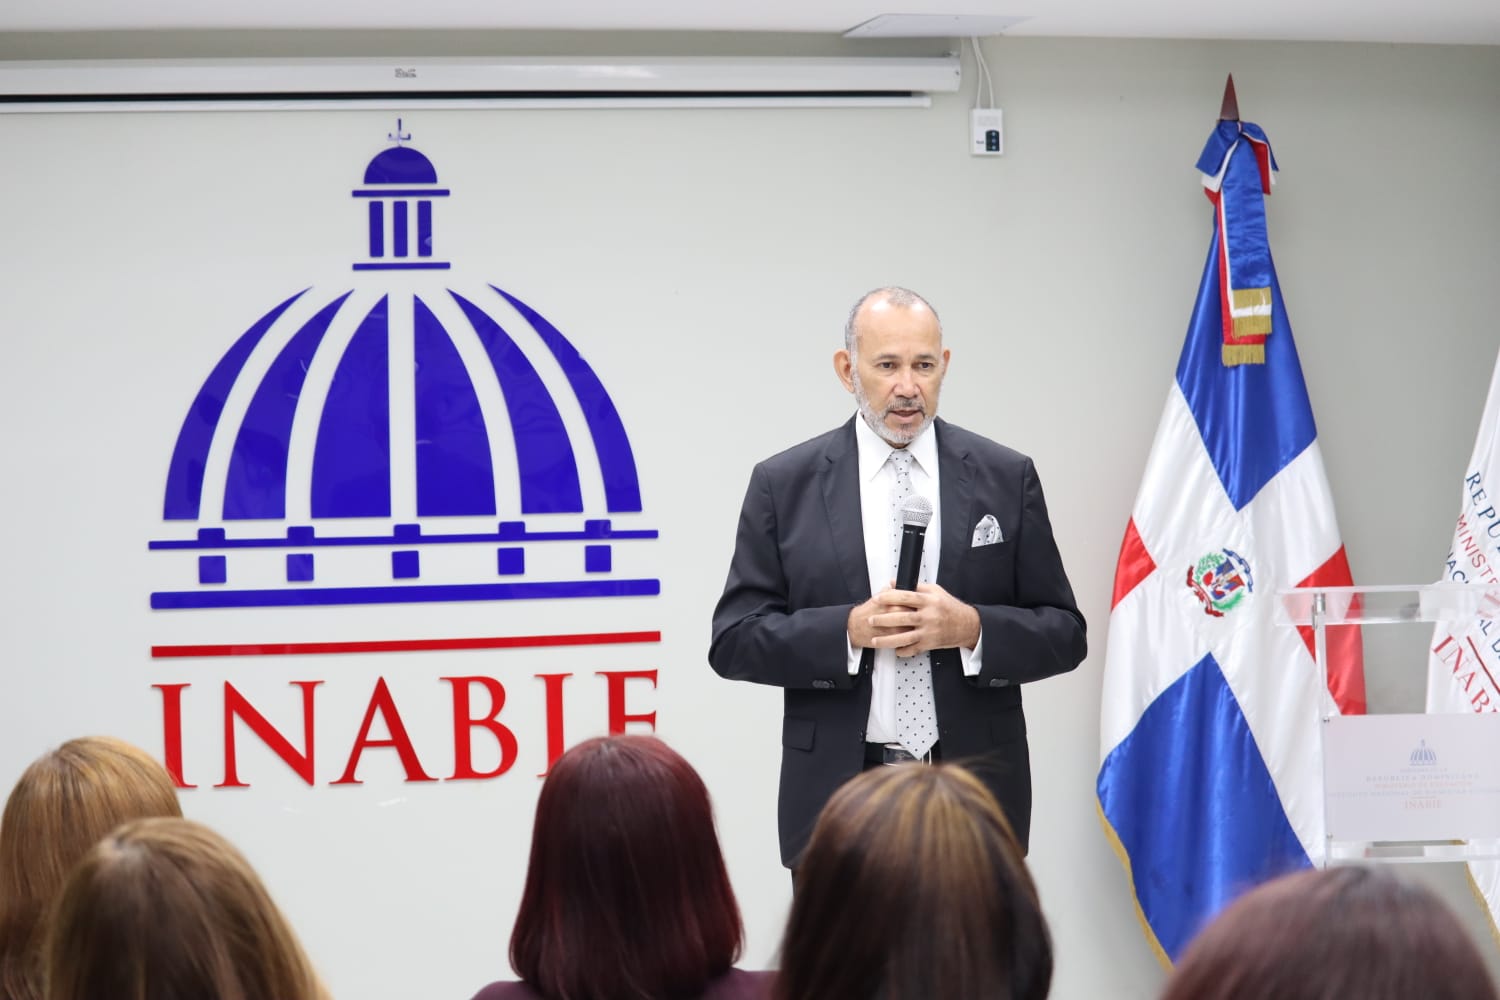 INABIE sigue avanzando plan para descentralizar operaciones con instalación de oficinas regionales